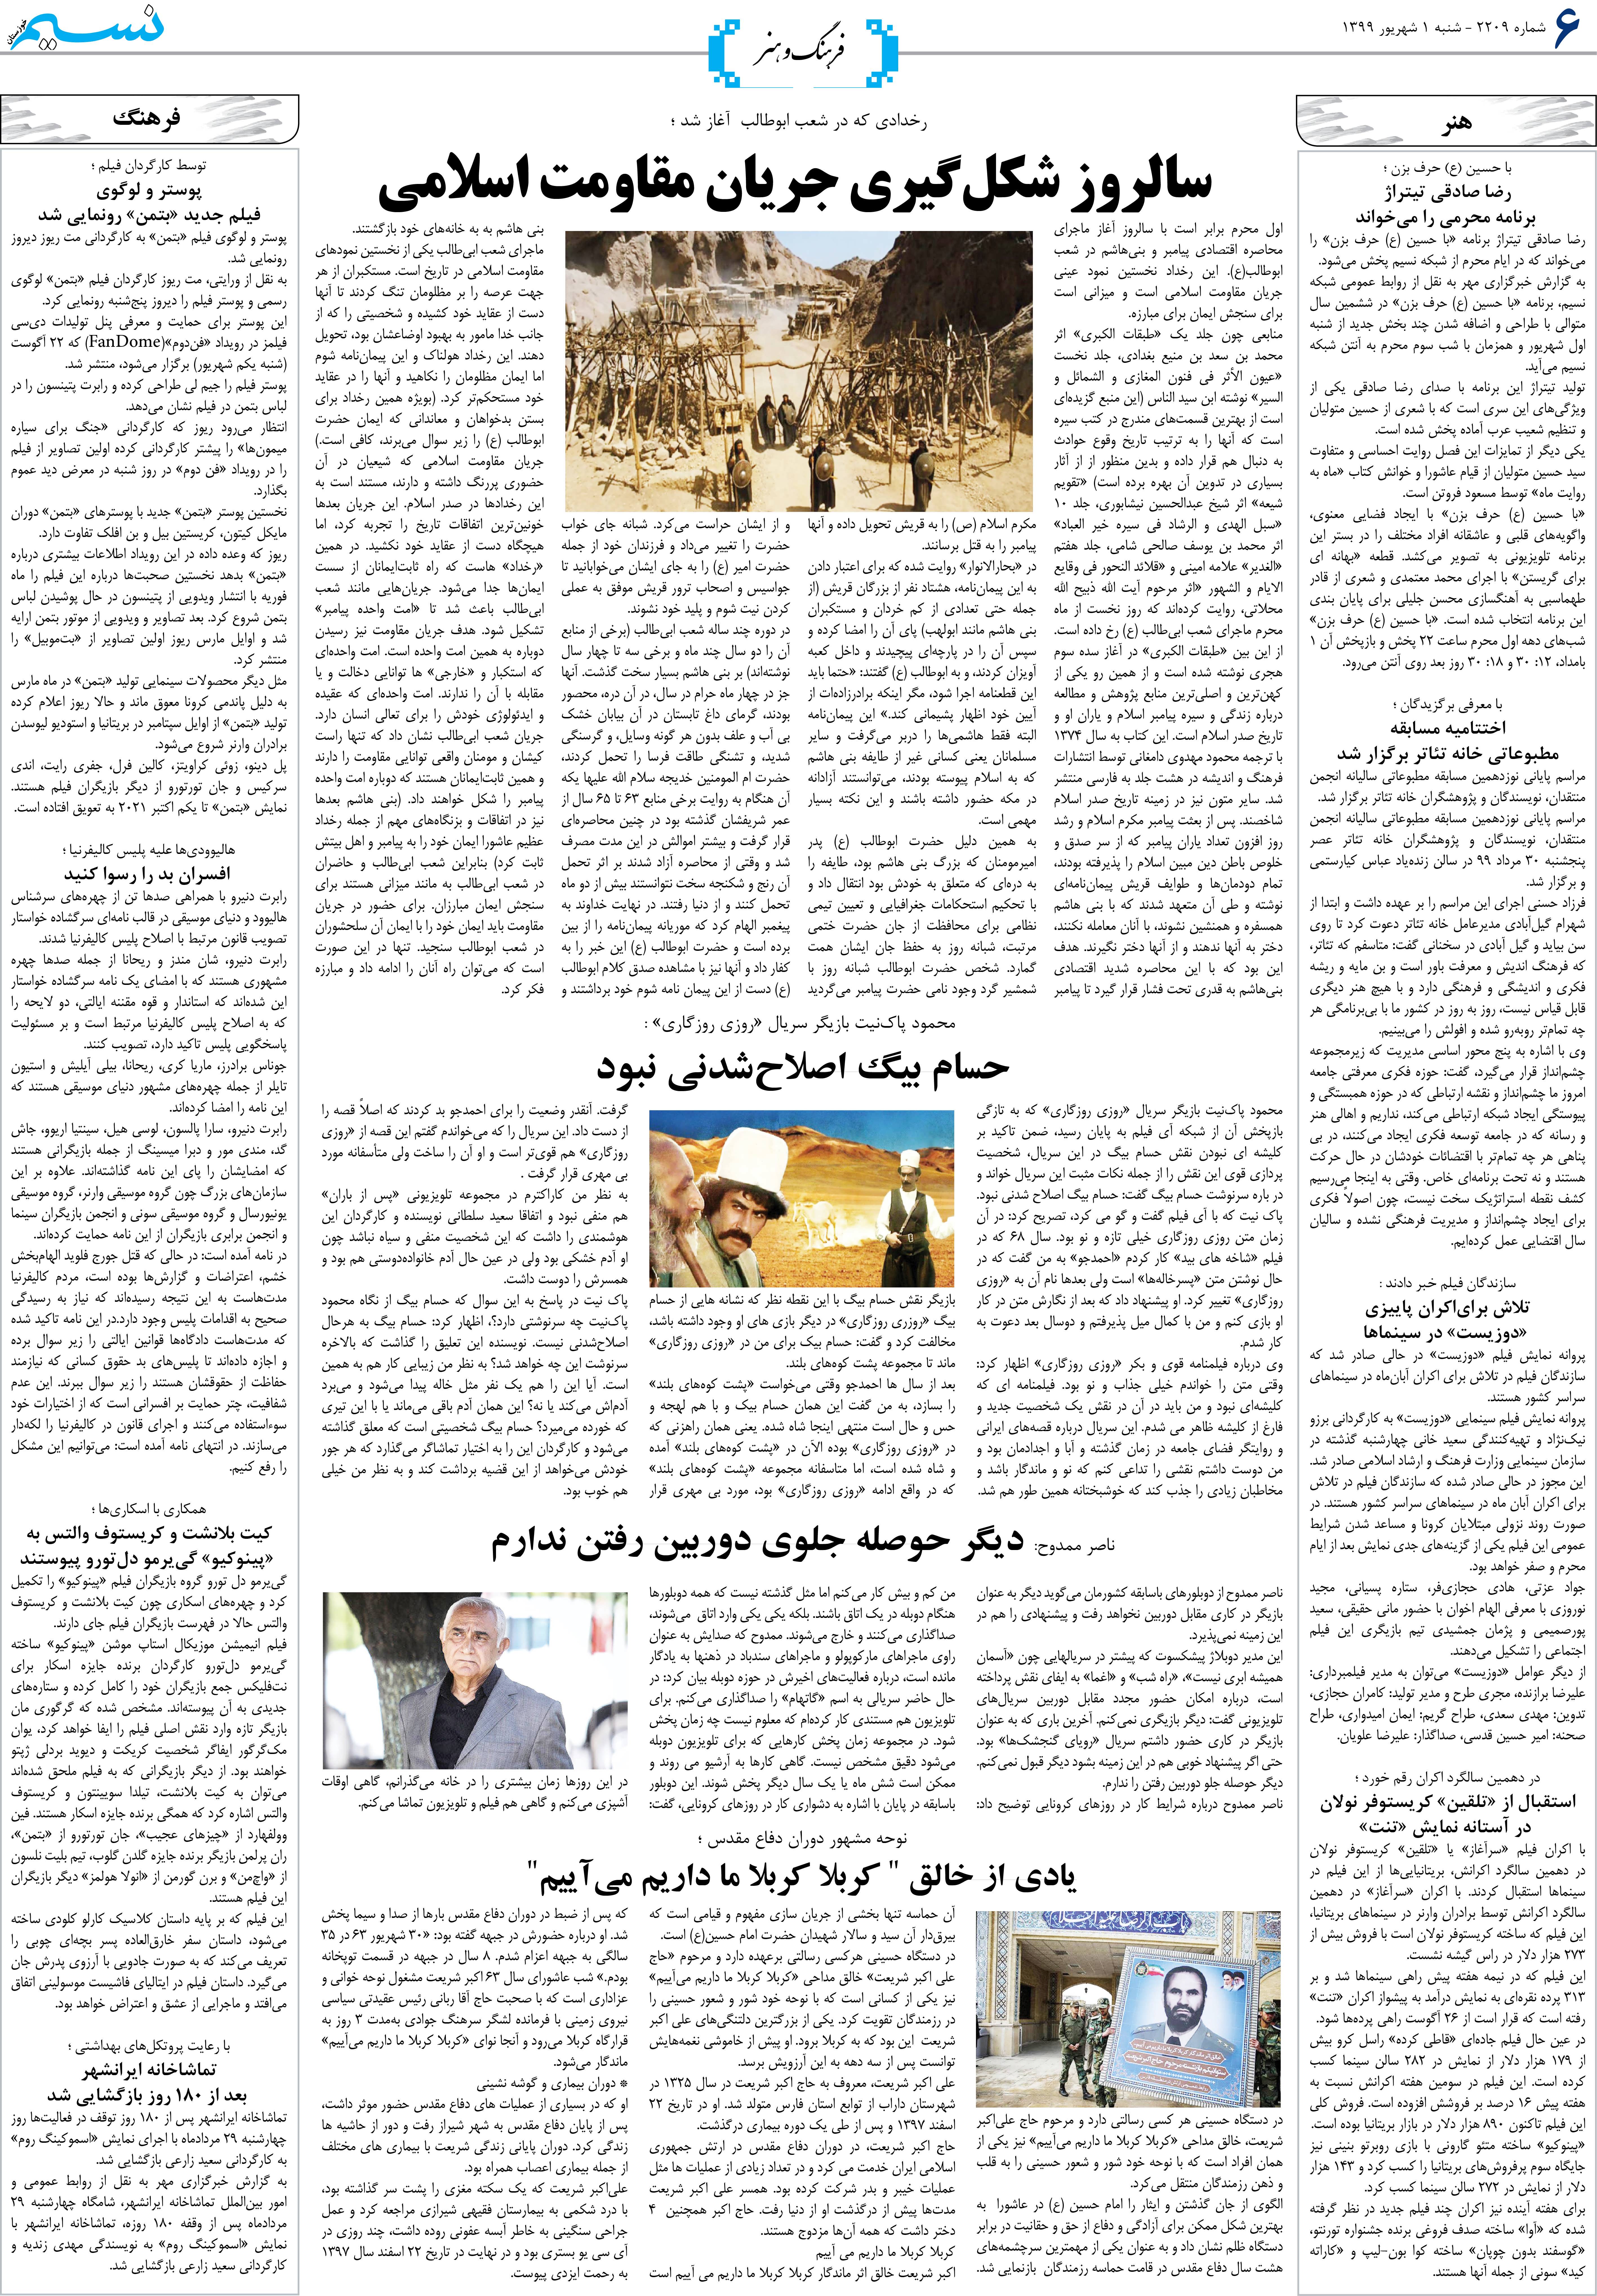 صفحه فرهنگ و هنر روزنامه نسیم شماره 2209